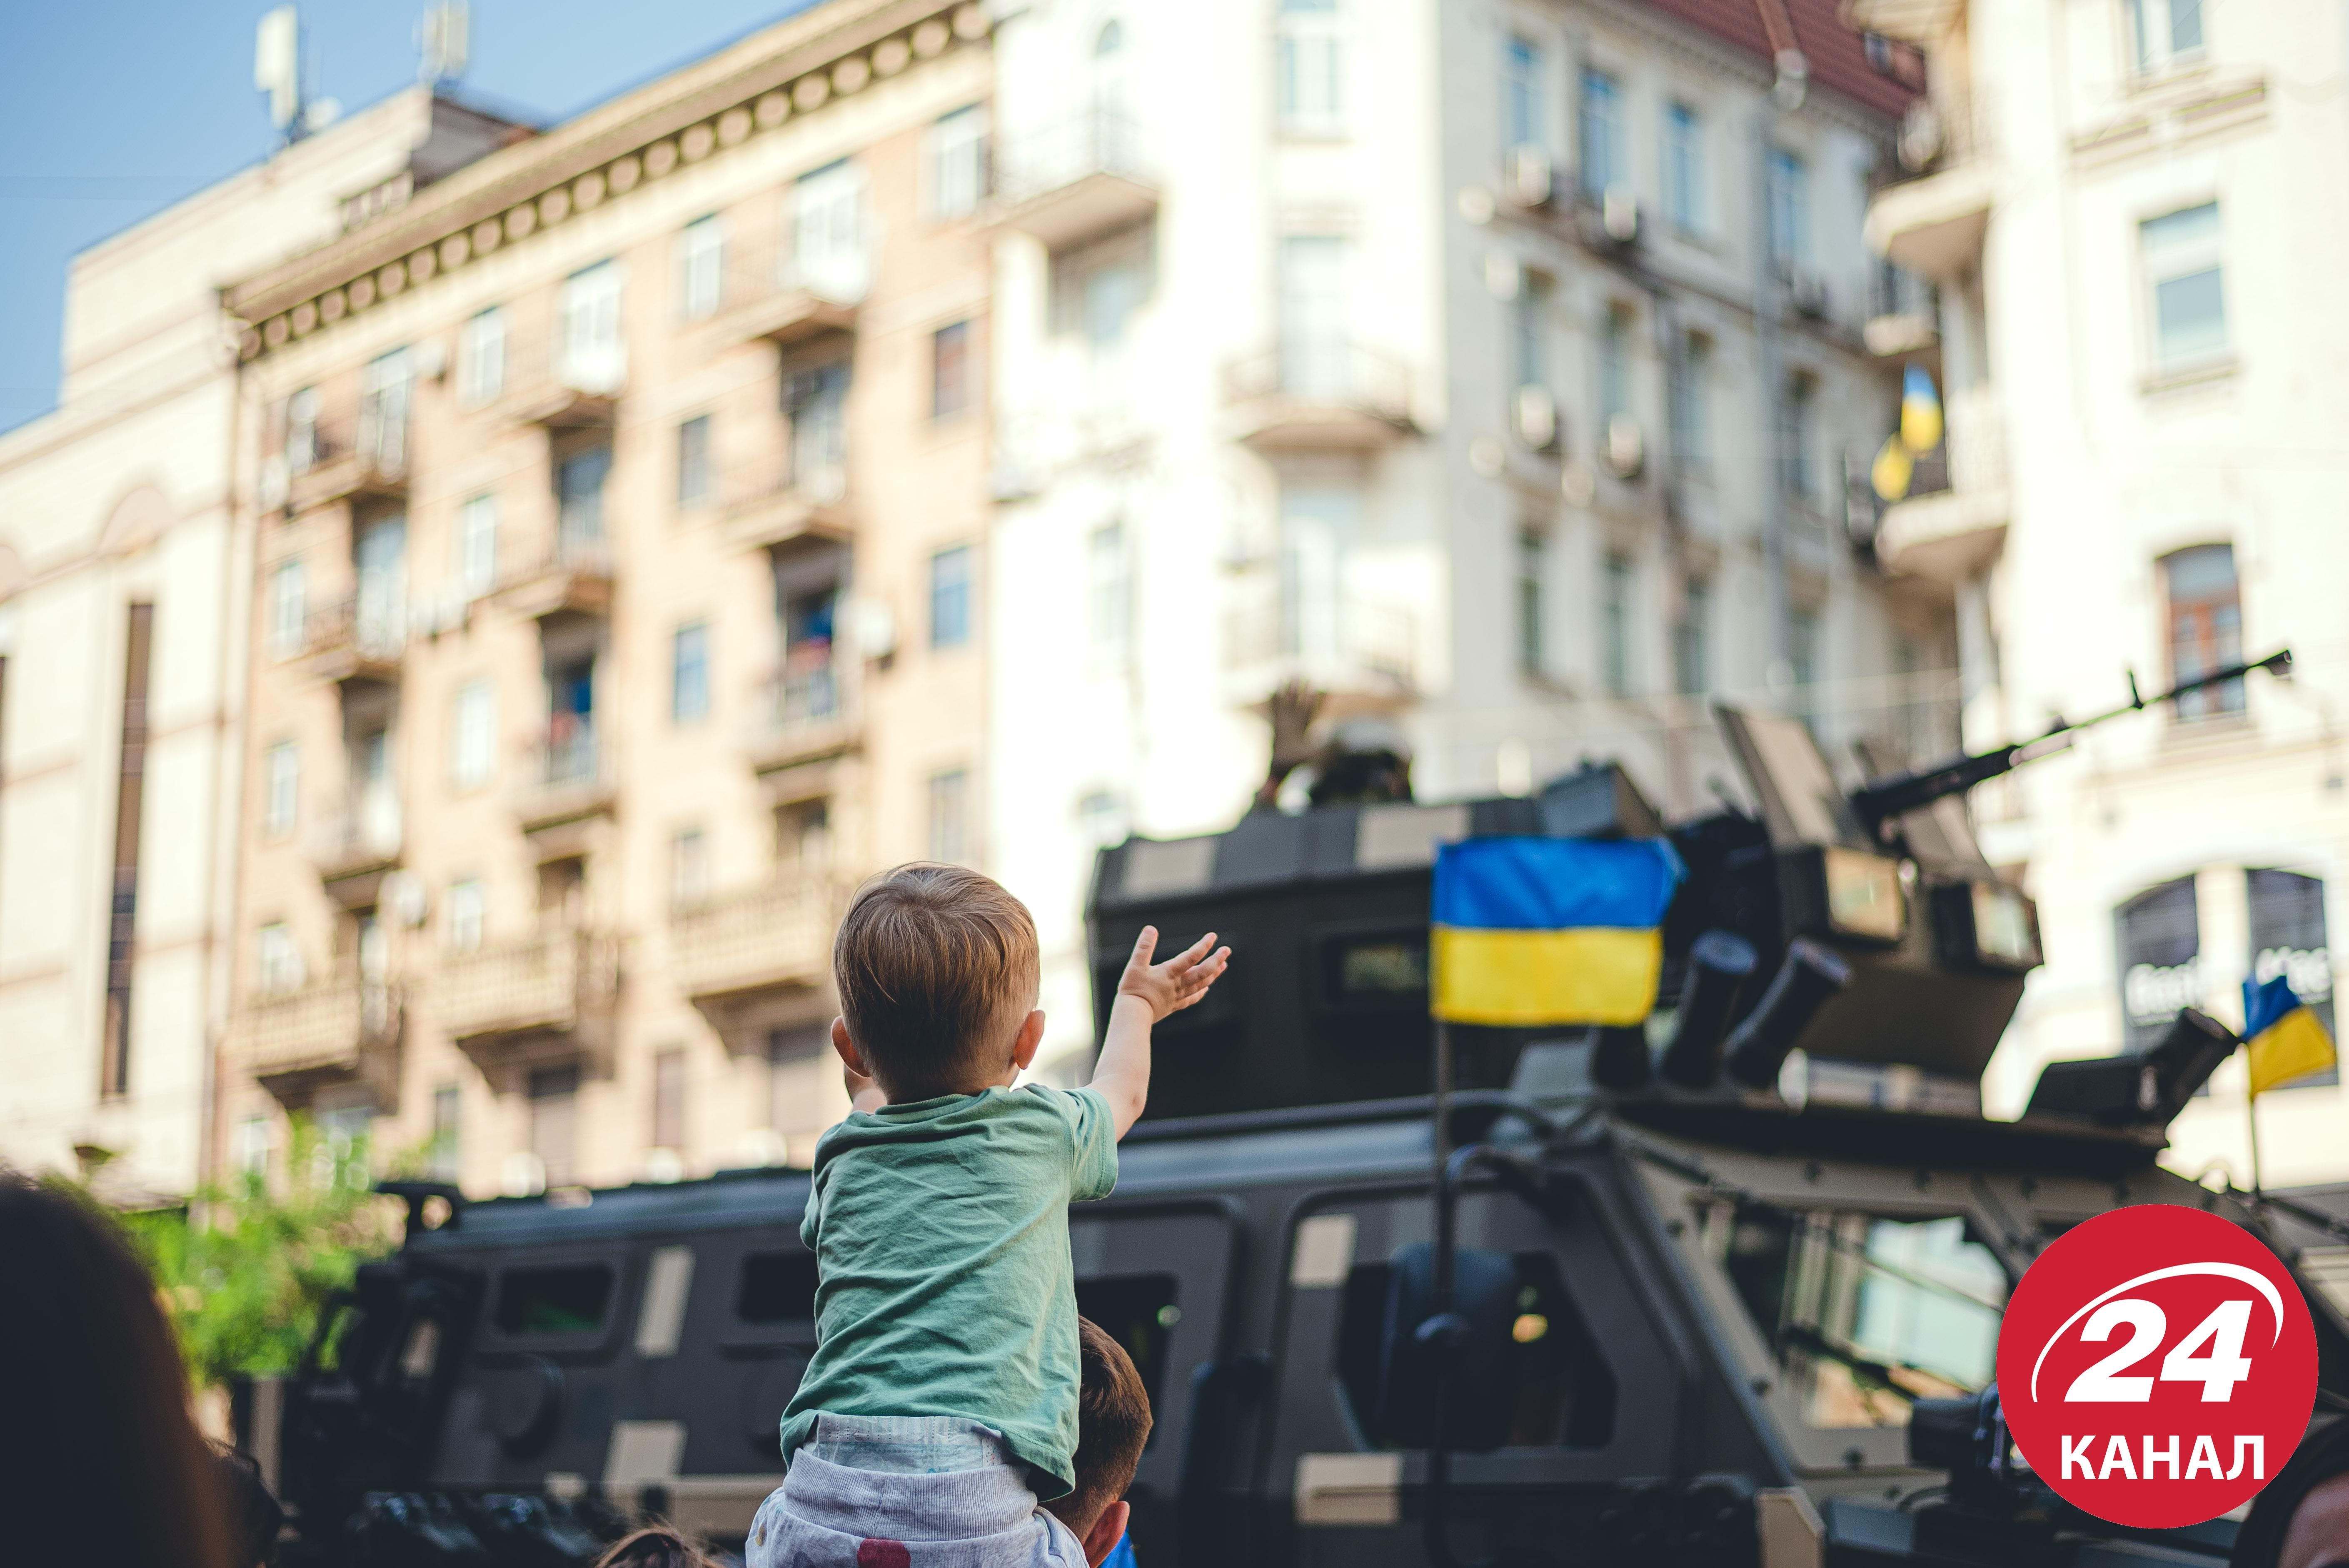 Феєричний парад до Дня Незалежності у яскравих фото - Новини Києва сьогодні - 24 Канал